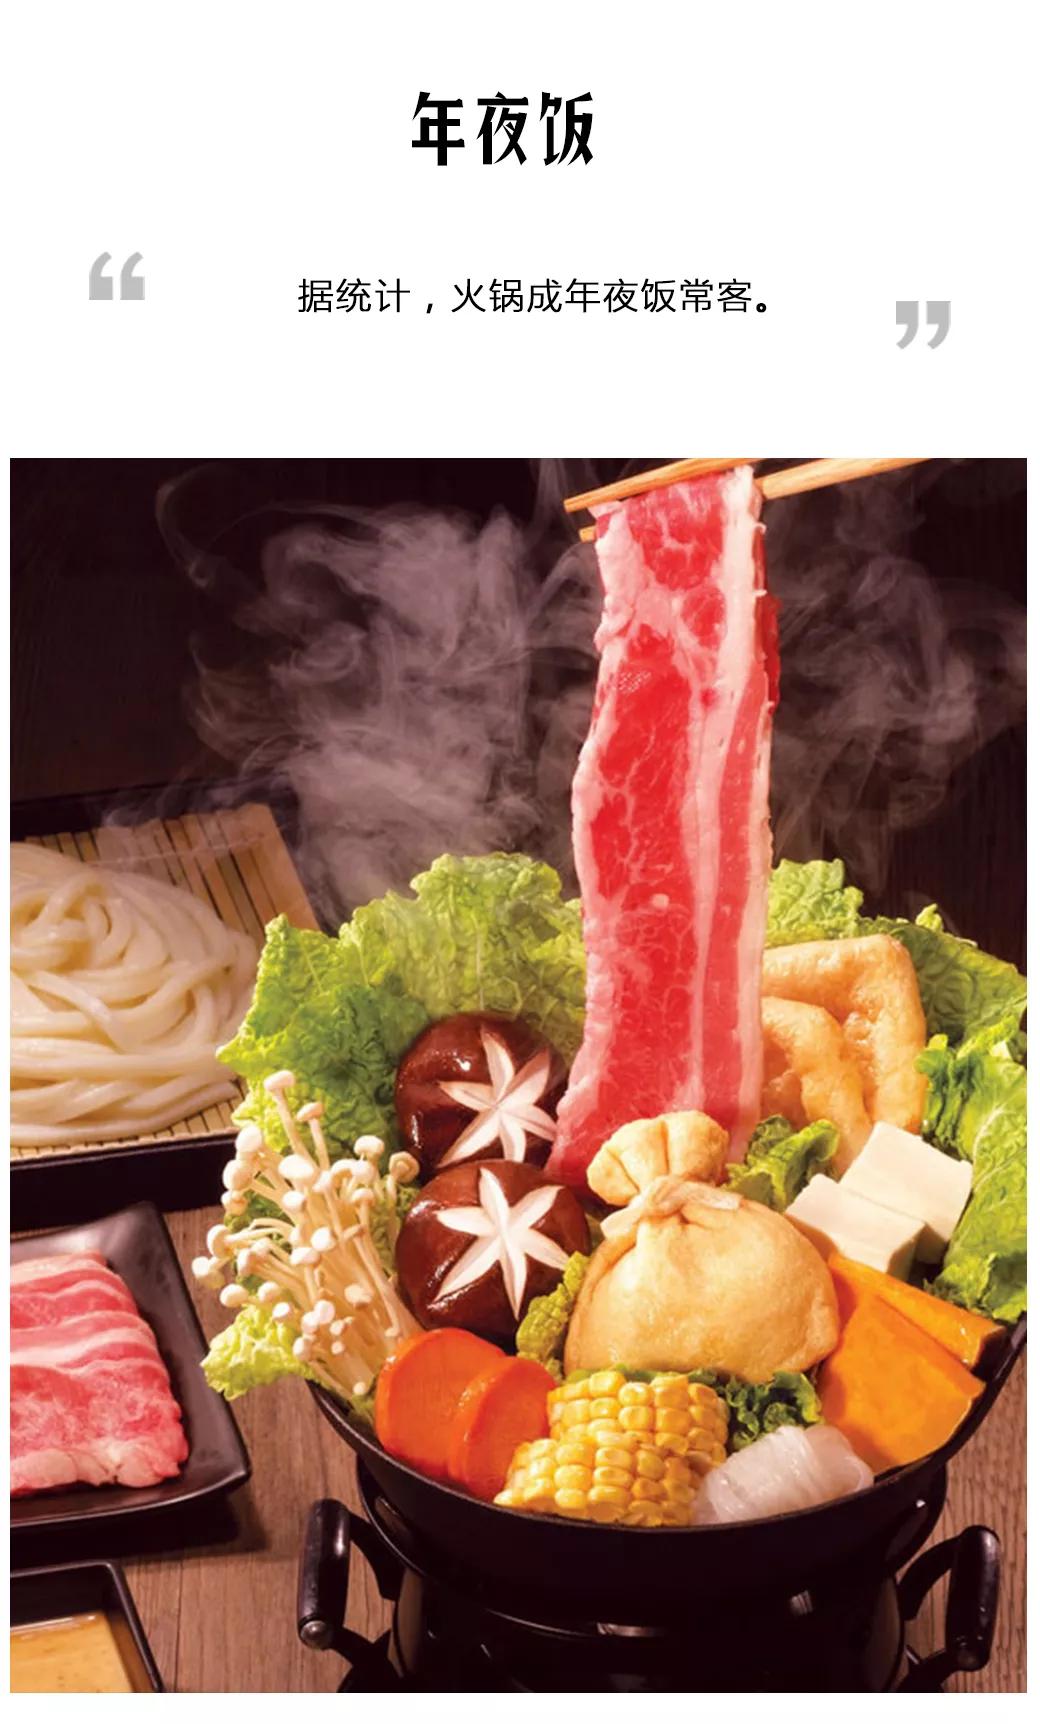 据统计，火锅成年夜饭最受欢迎品类: